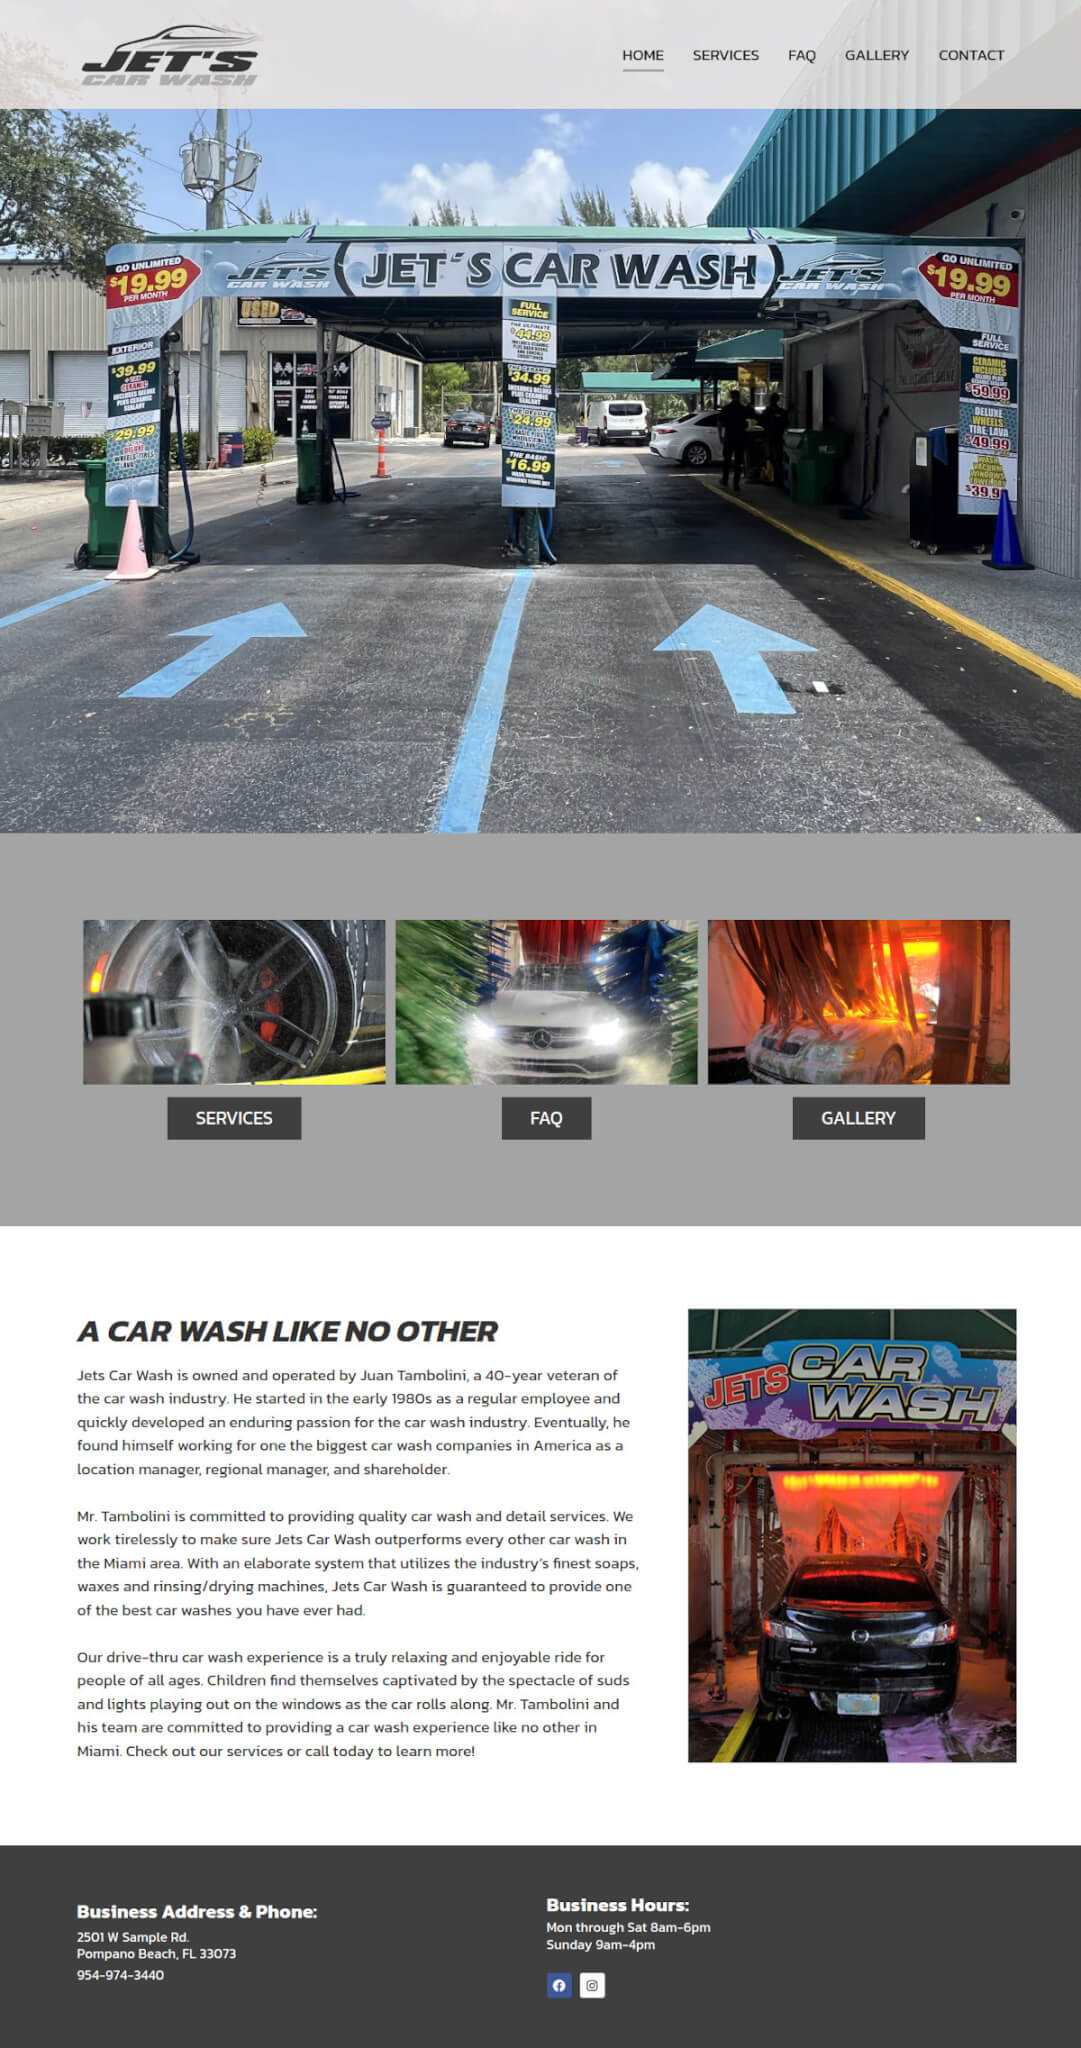 Jet's Car Wash - TLS Mobile Friendly Website